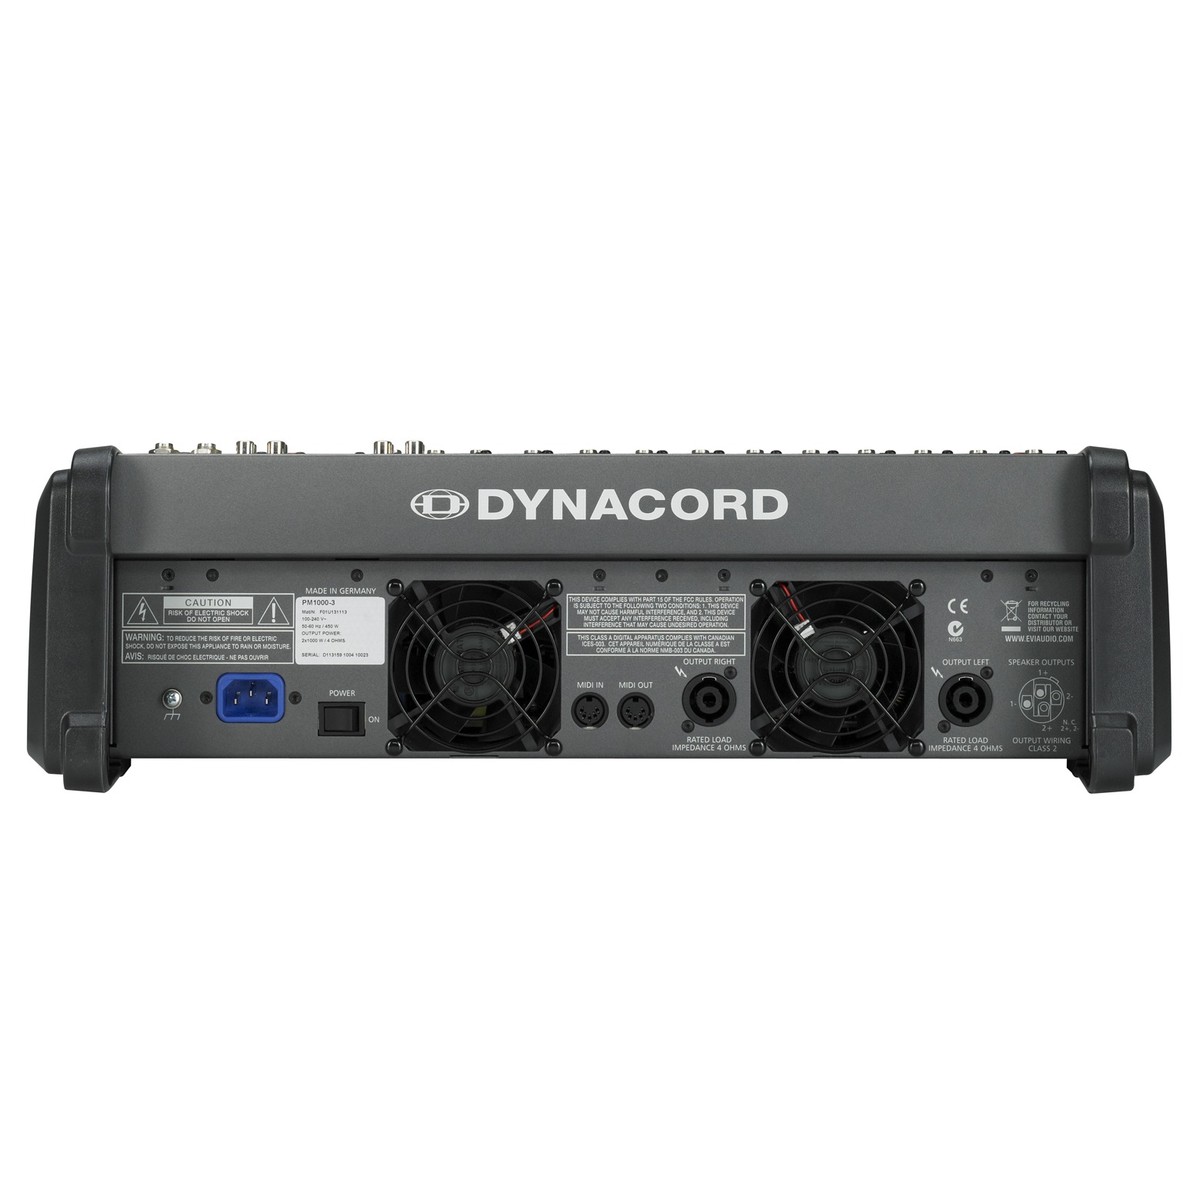 DYNACORD POWERMATE 1000-3 MIXER ANALOGICO AMPLIFICATO CON INTERFACCIA USB E DOPPI EFFETTI STEREO 4